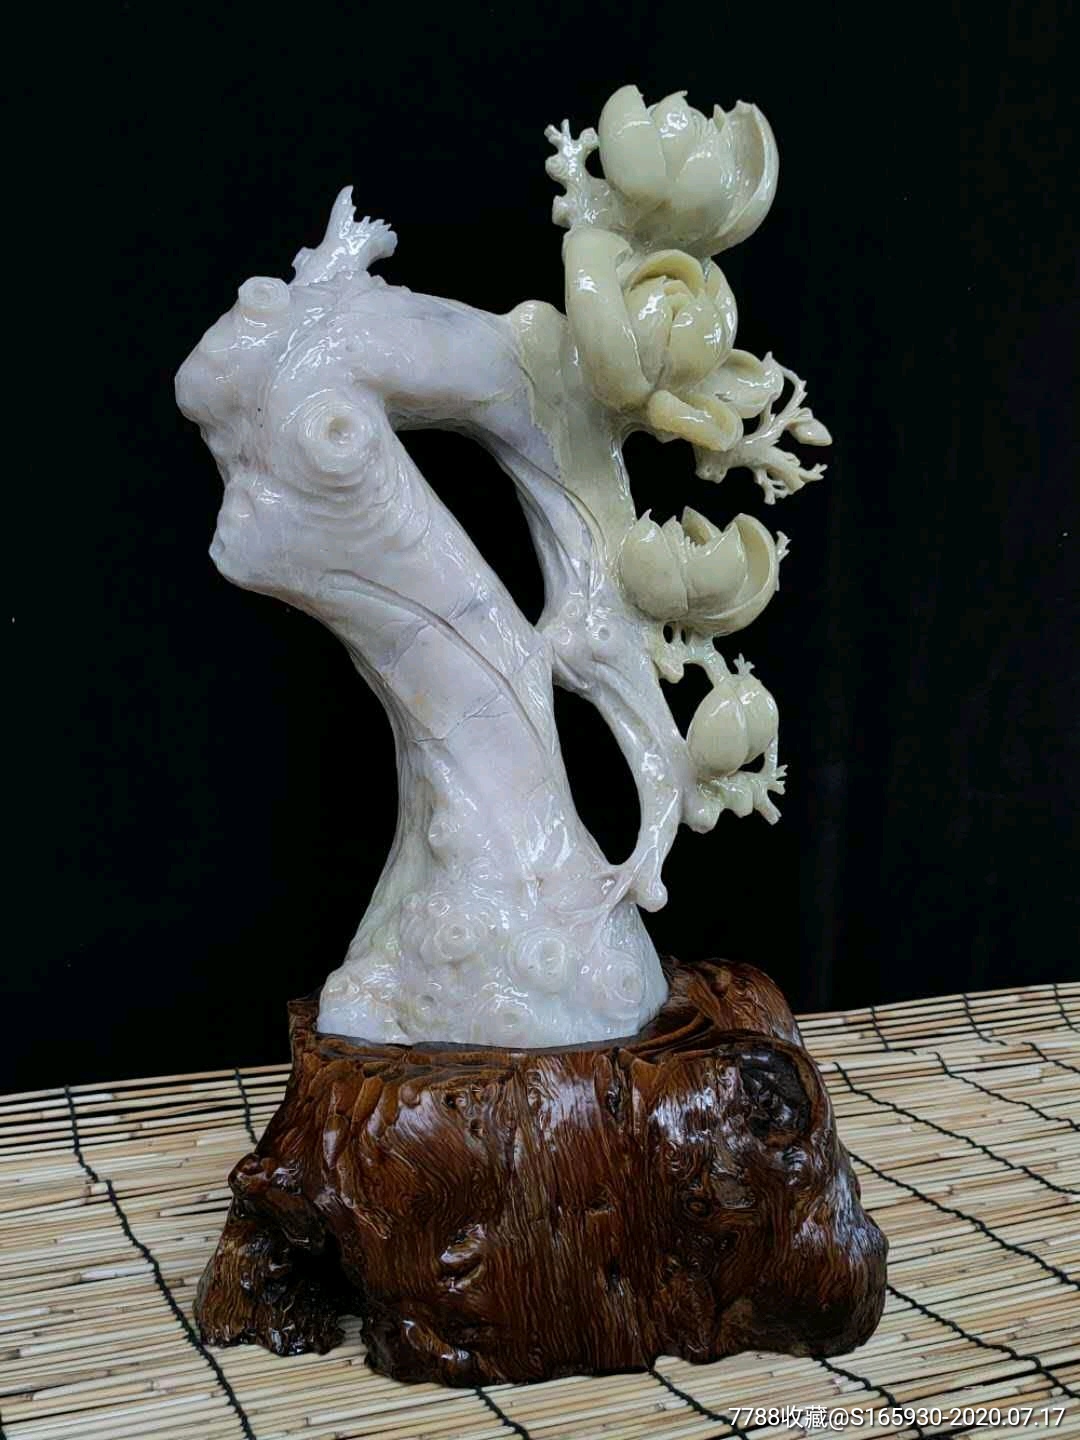 芙蓉石玉兰花摆件高浮雕镂空雕刻造型独特美观手工雕刻品相完好成色见